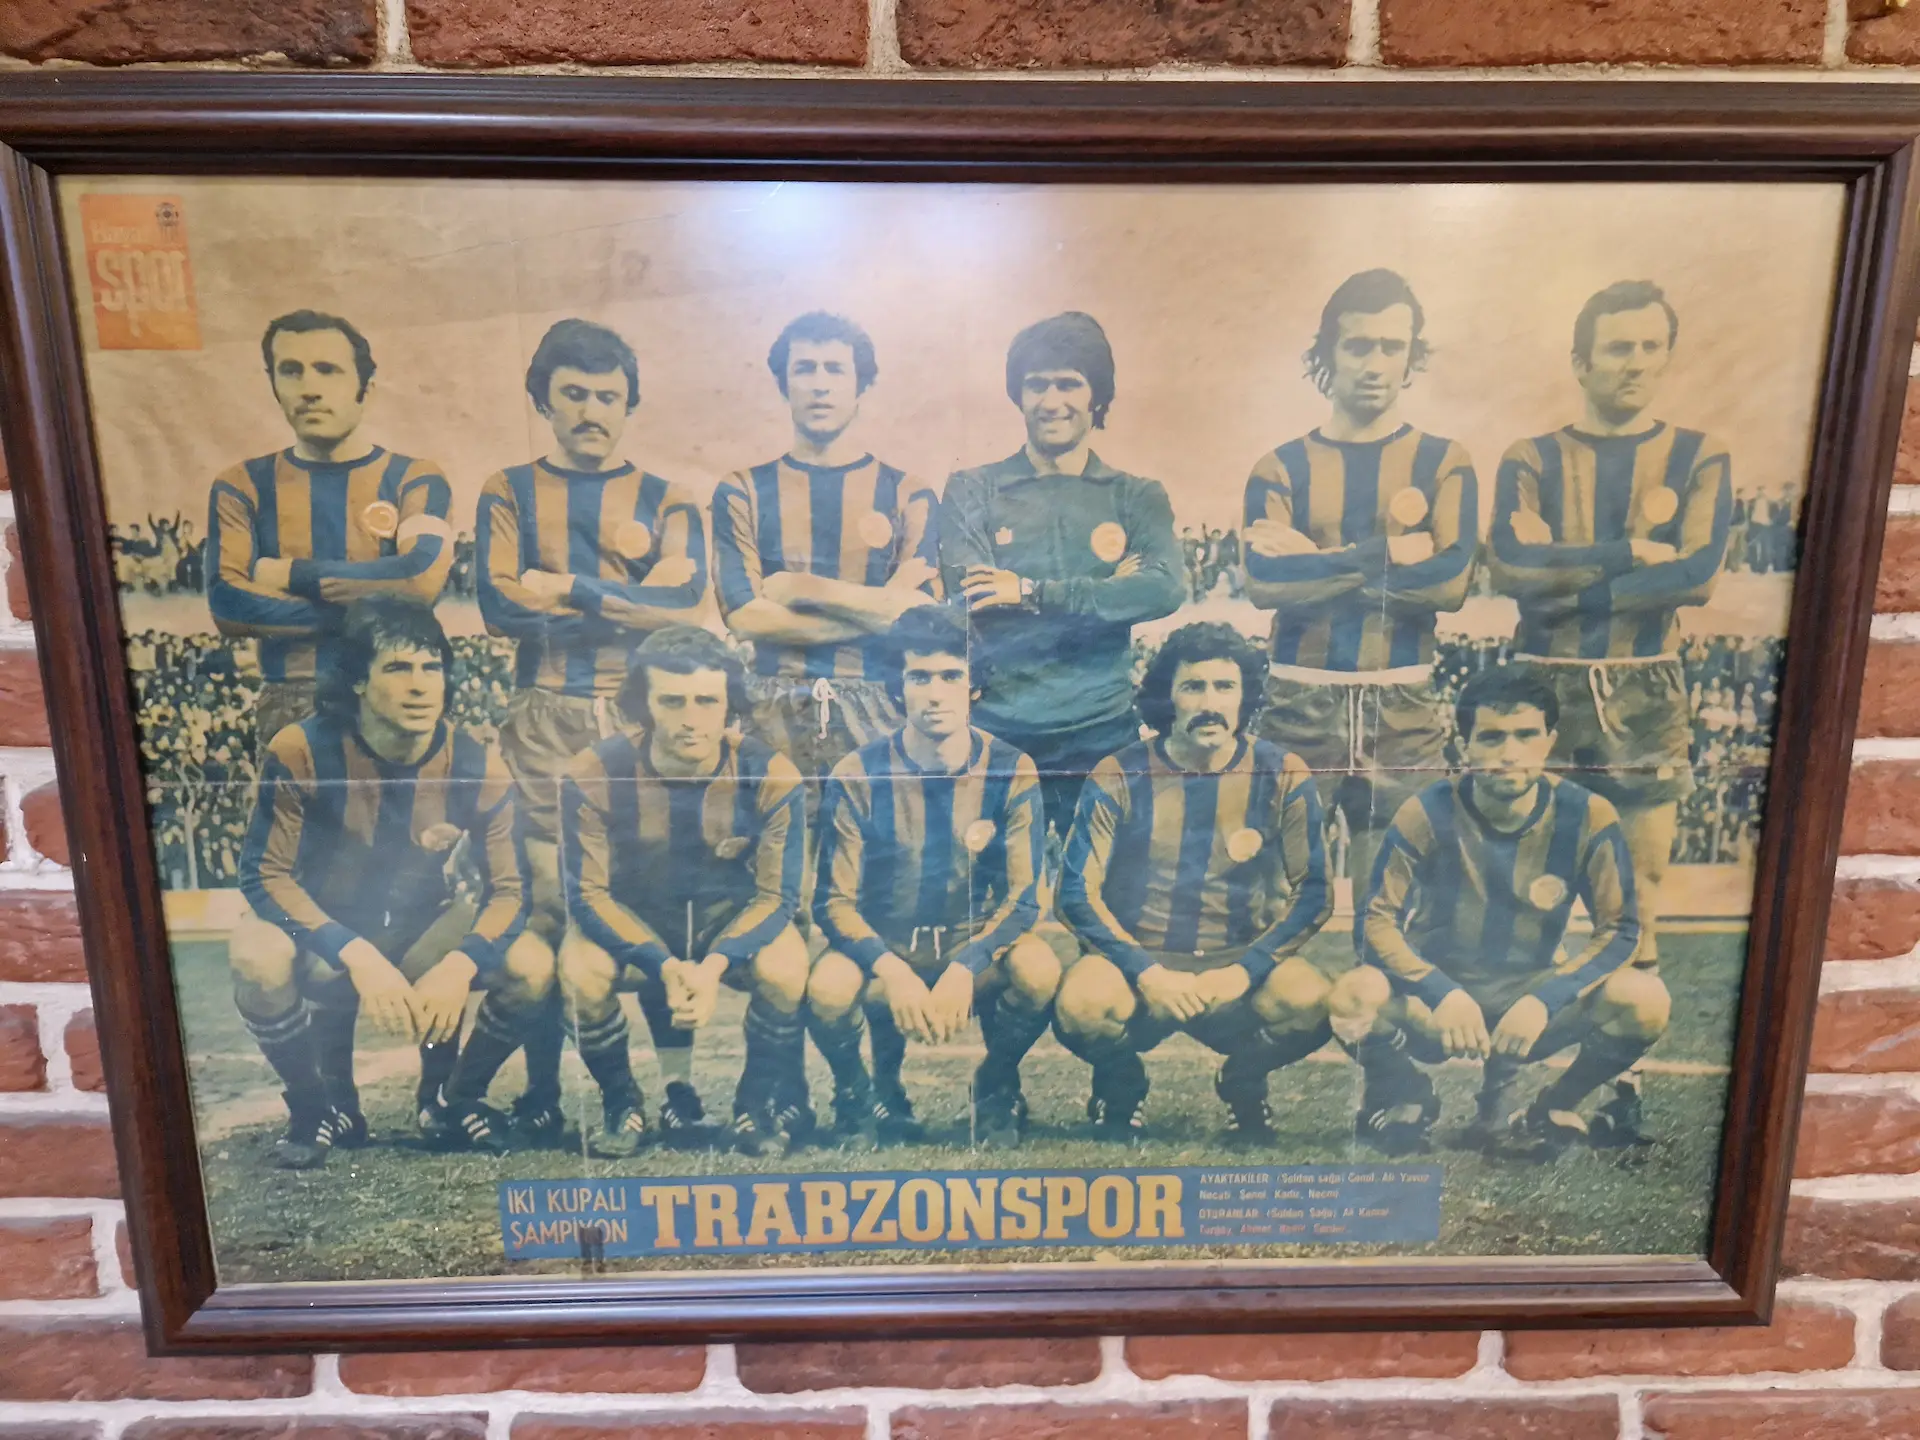 Vieille photo encadrée de l'équipe de Trabzonspor, les joueurs portent des maillots rayés à manches longues.